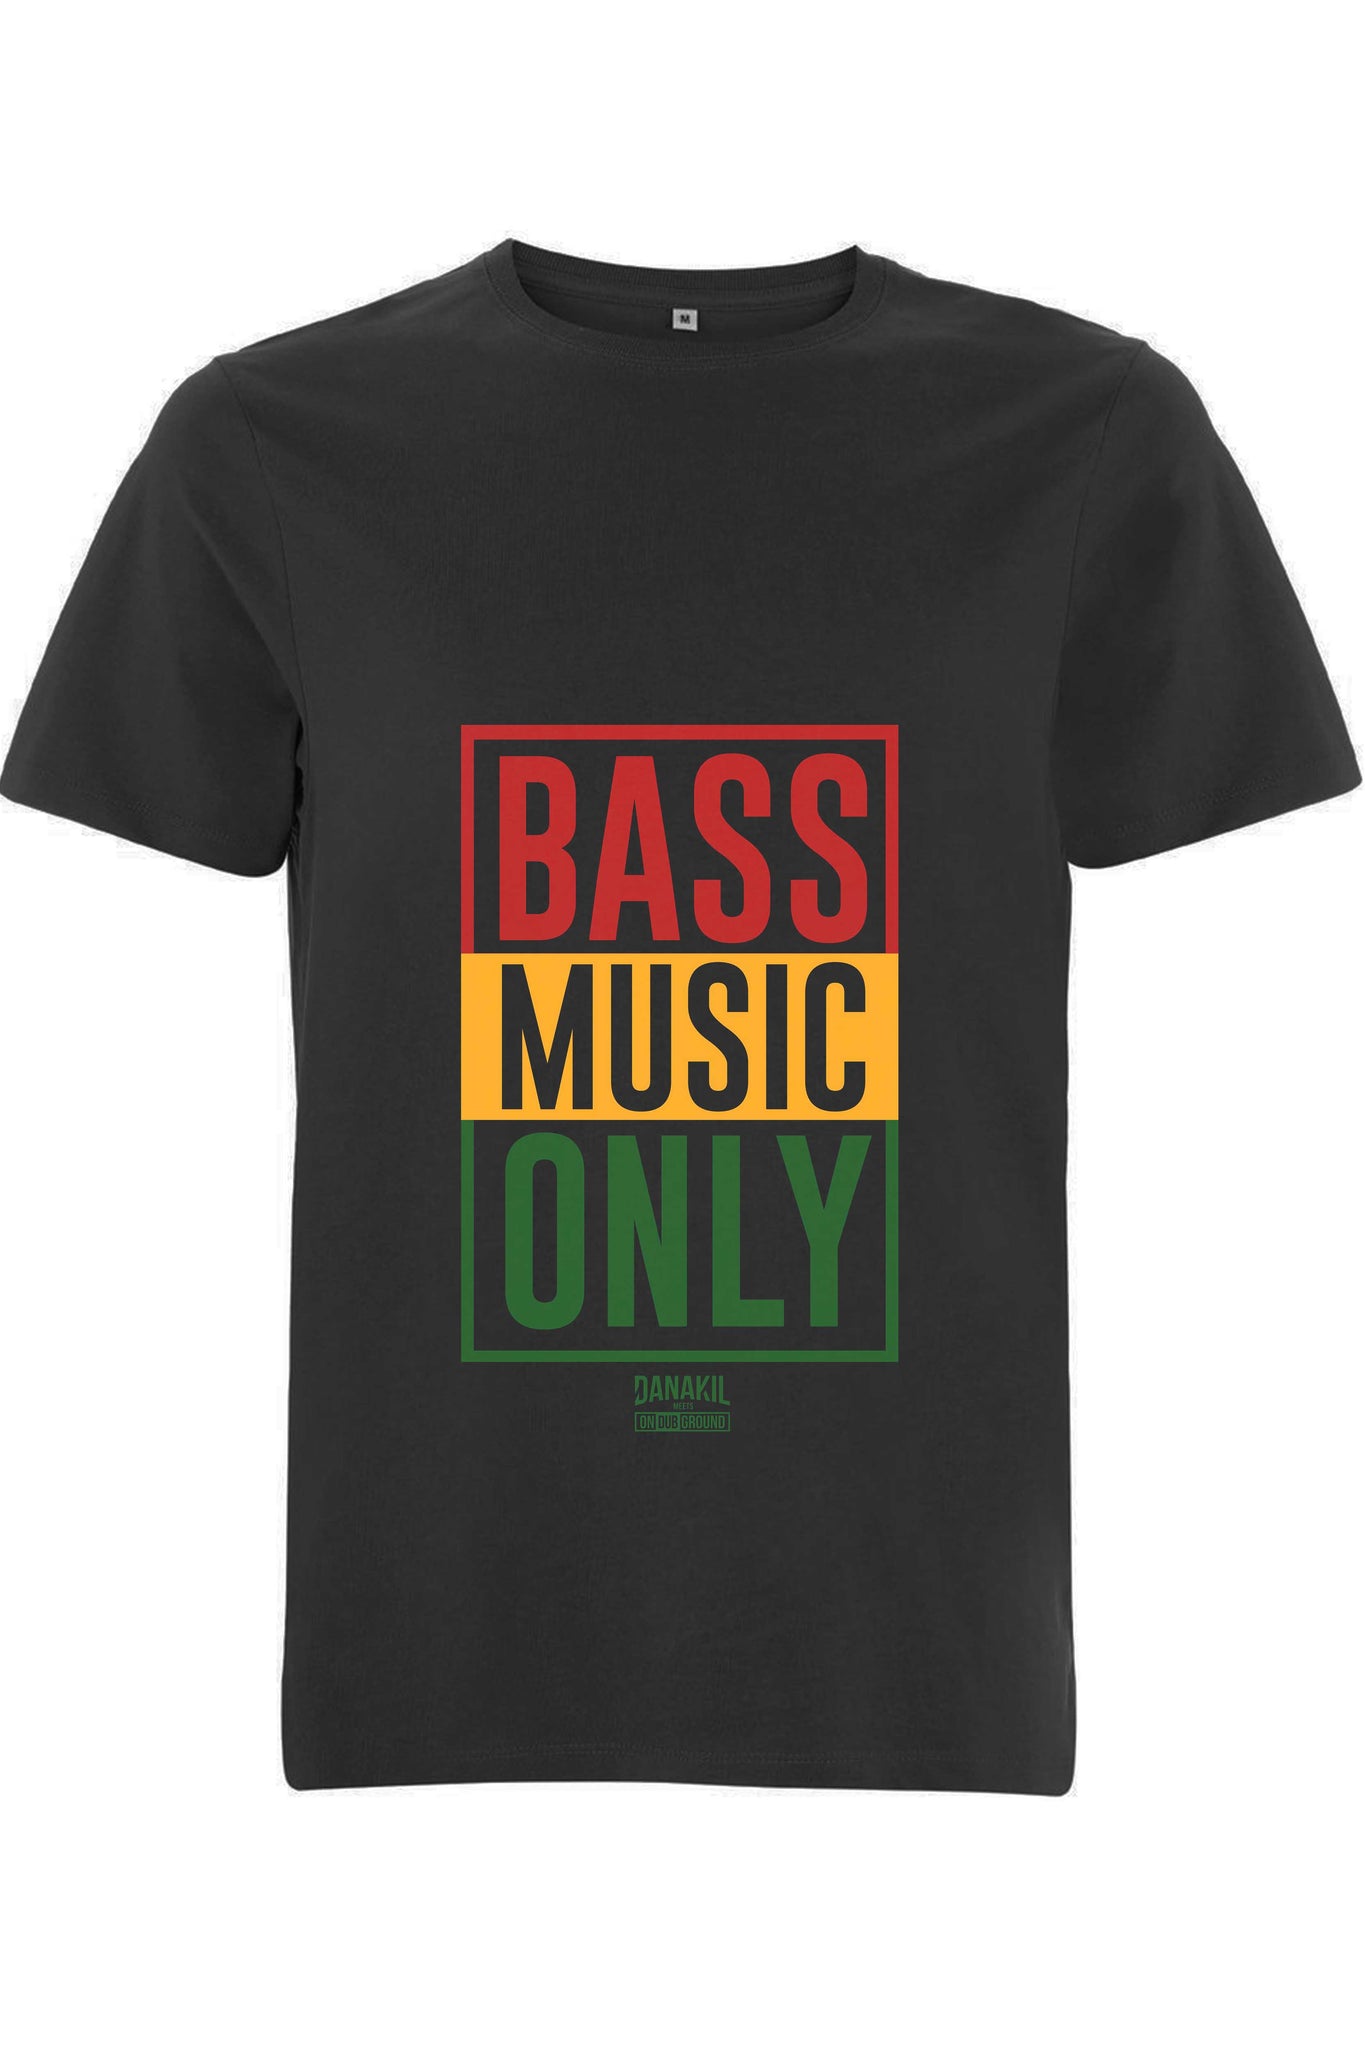 Danakil - T-Shirt Bass Music Only